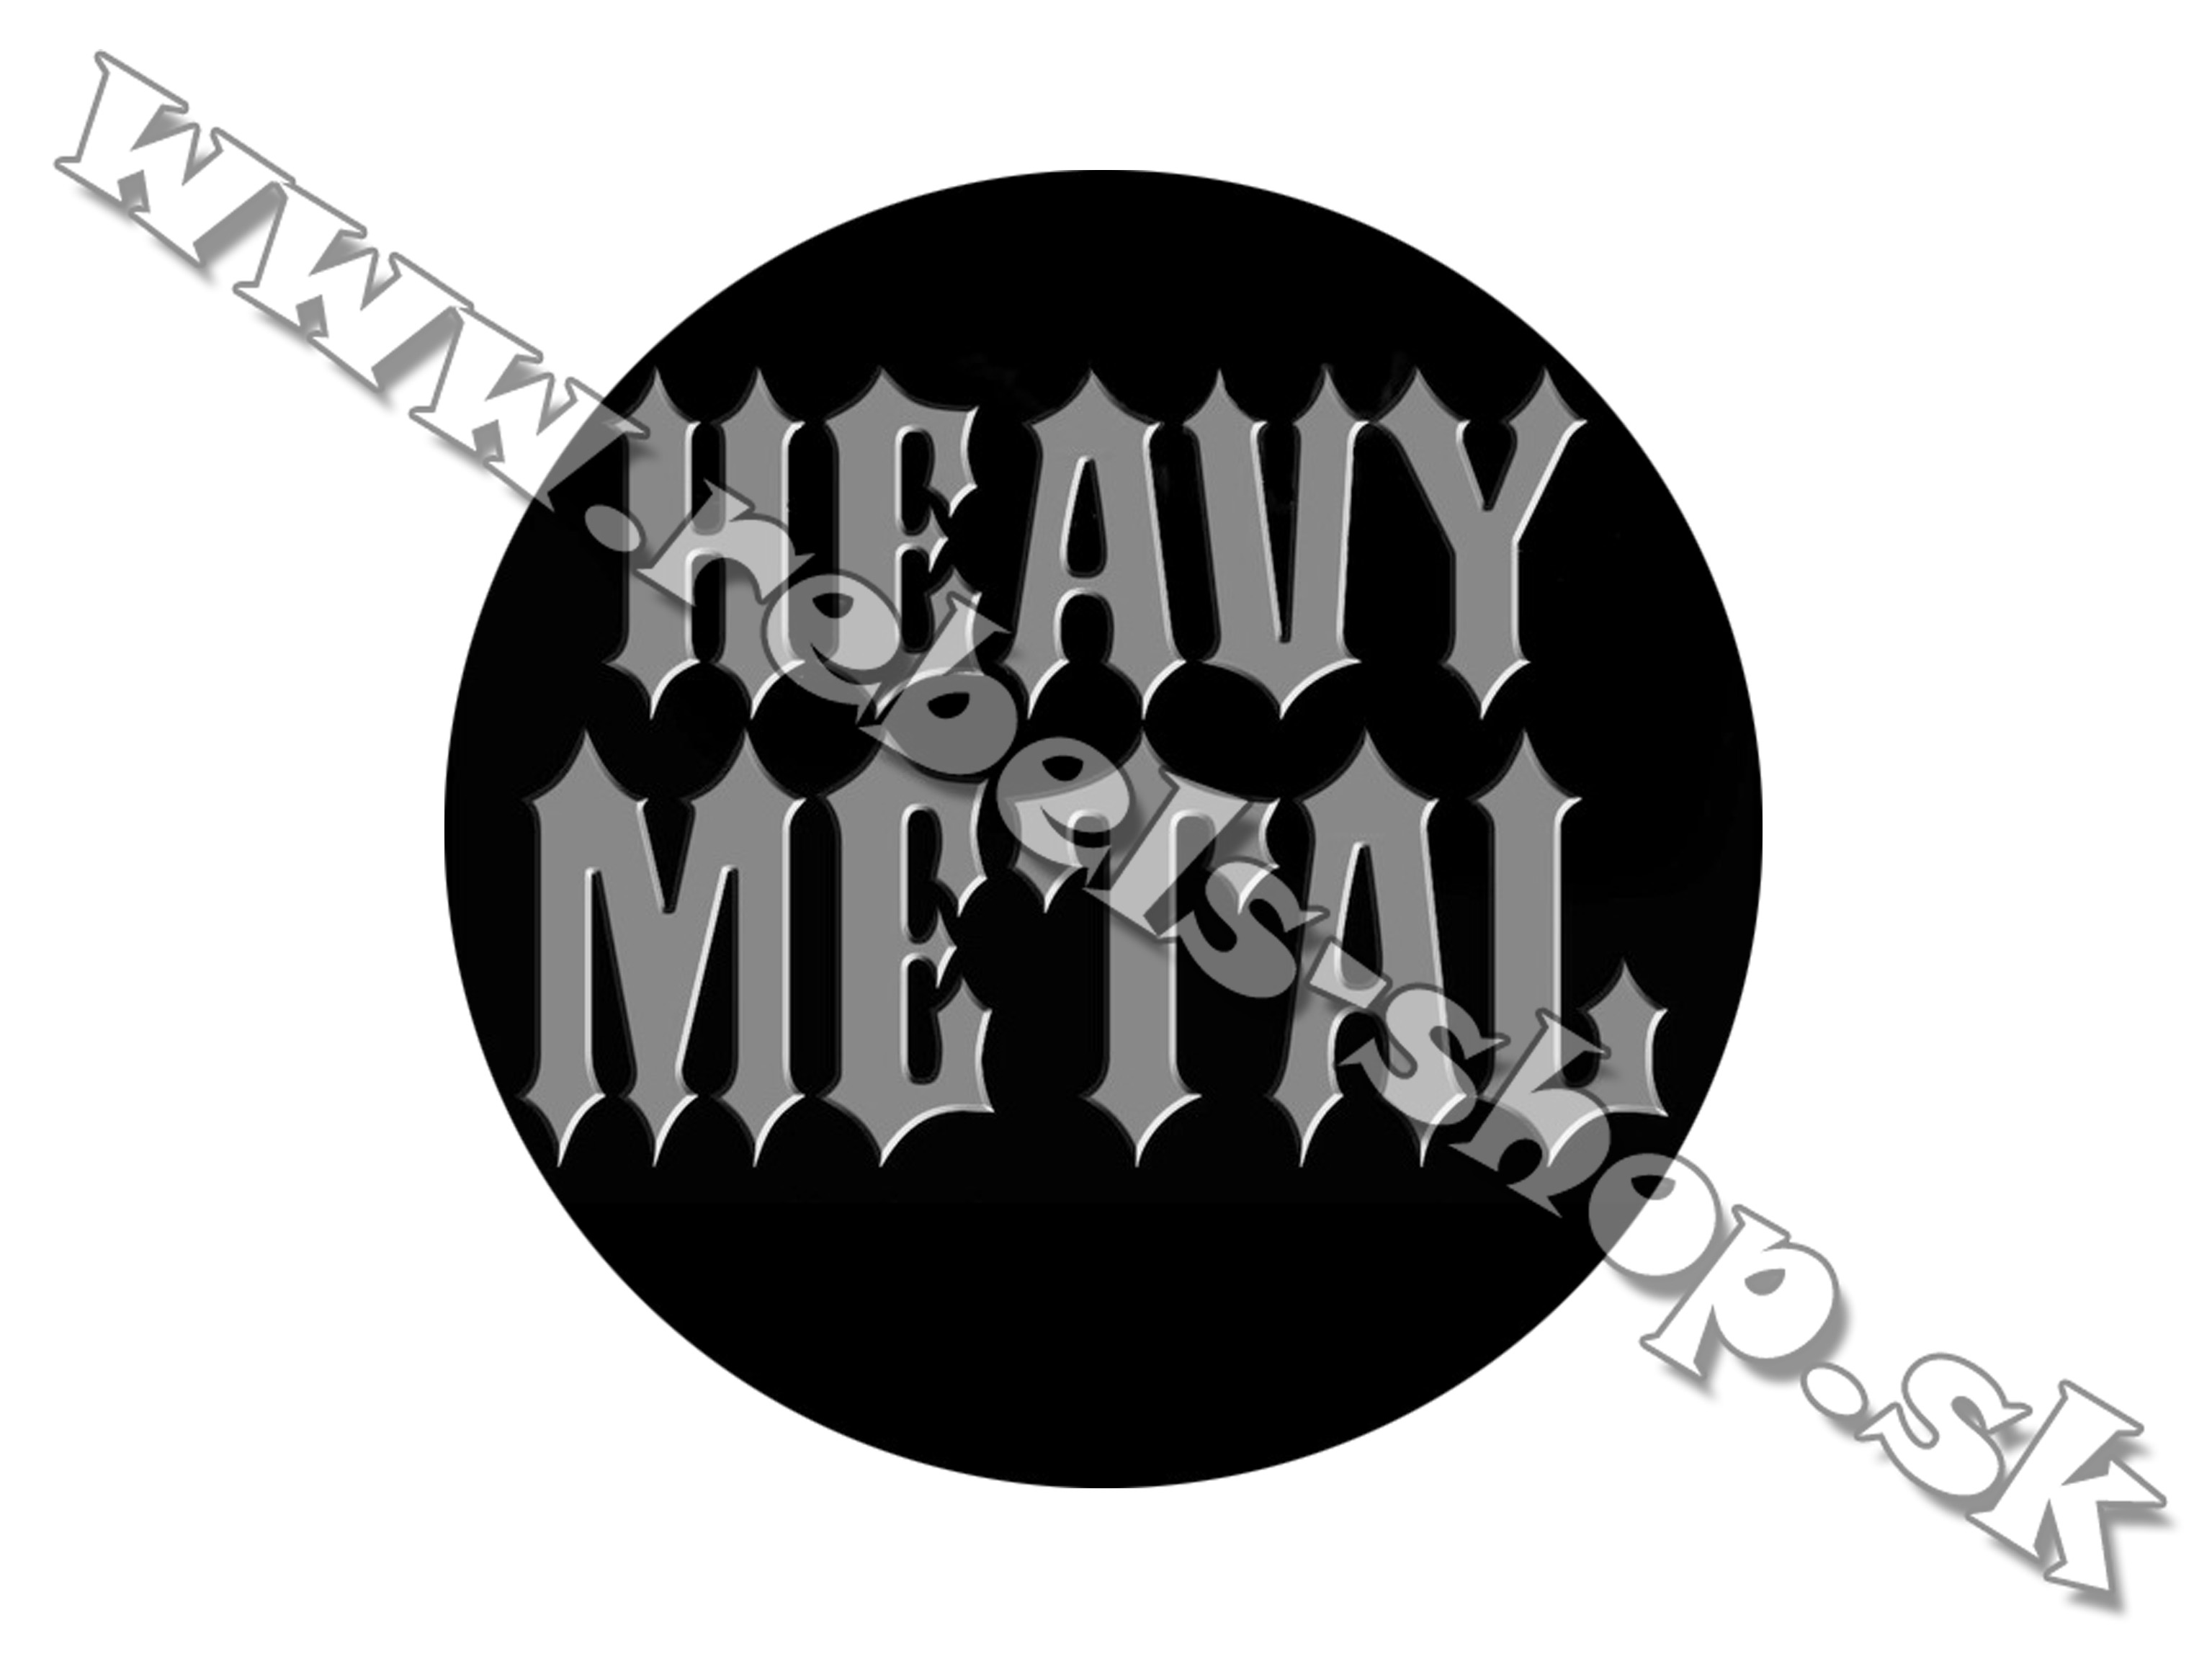 Odznak "Metal"